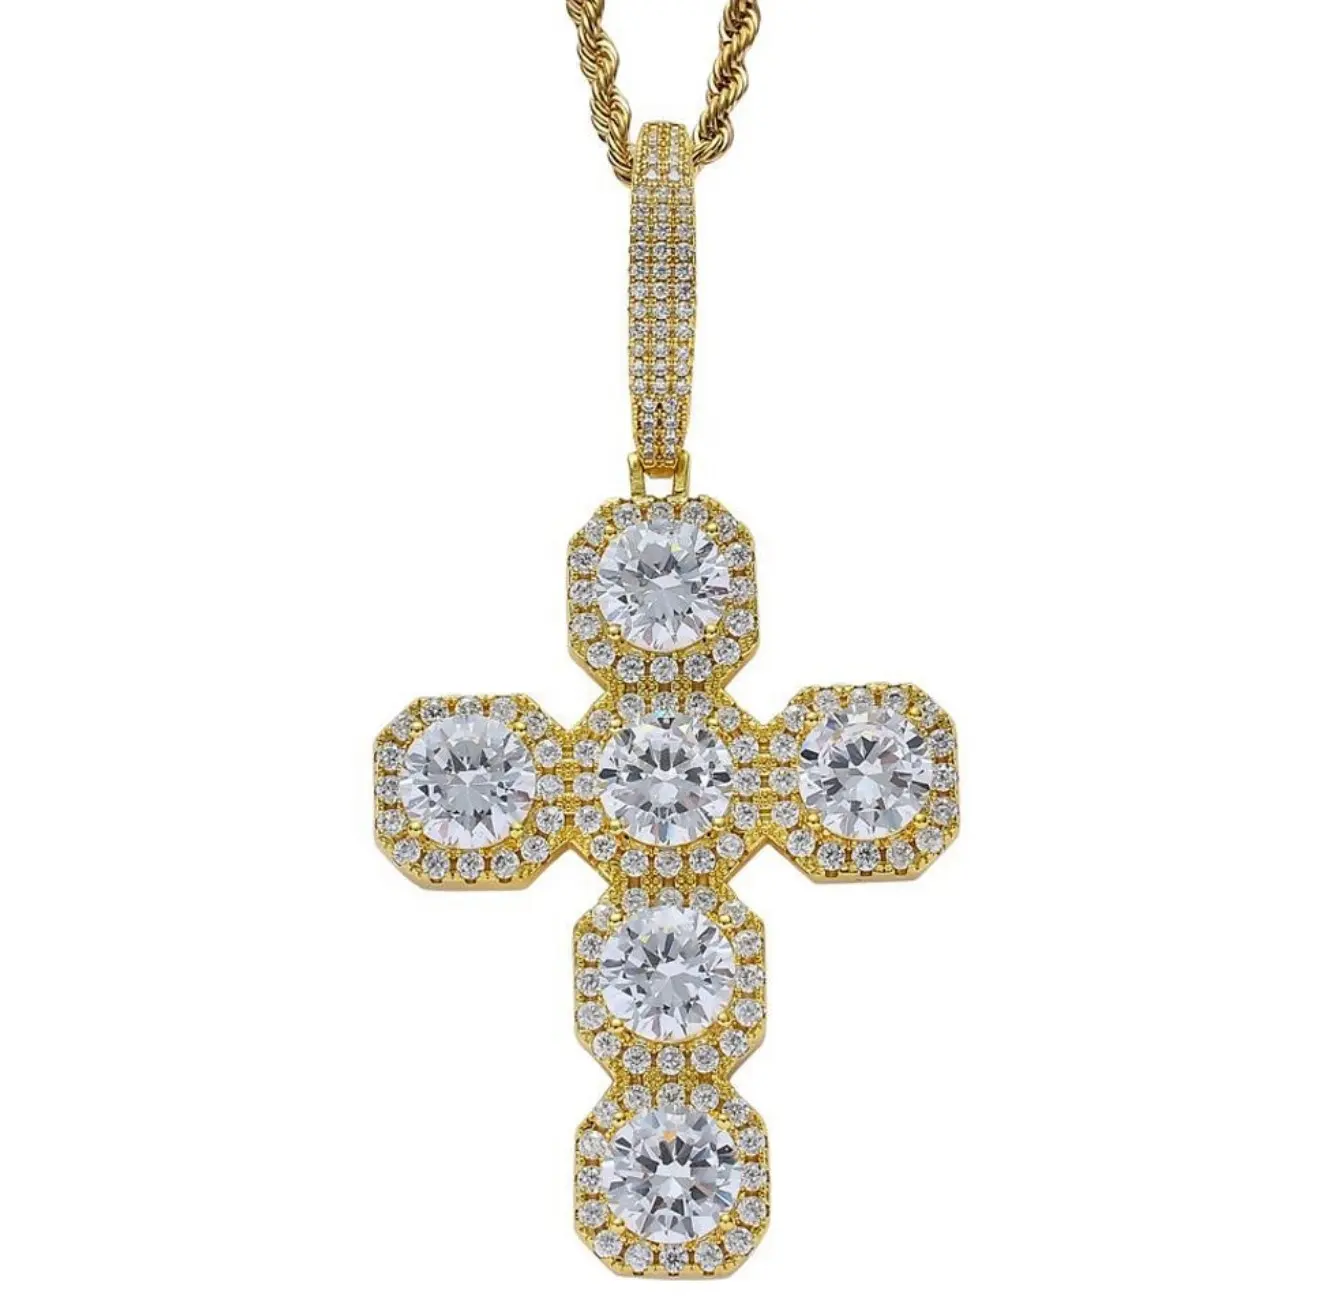 Trendy Pendant Necklace Jewelry 925 Custom Charm pendant Gold plated Necklace jewellery